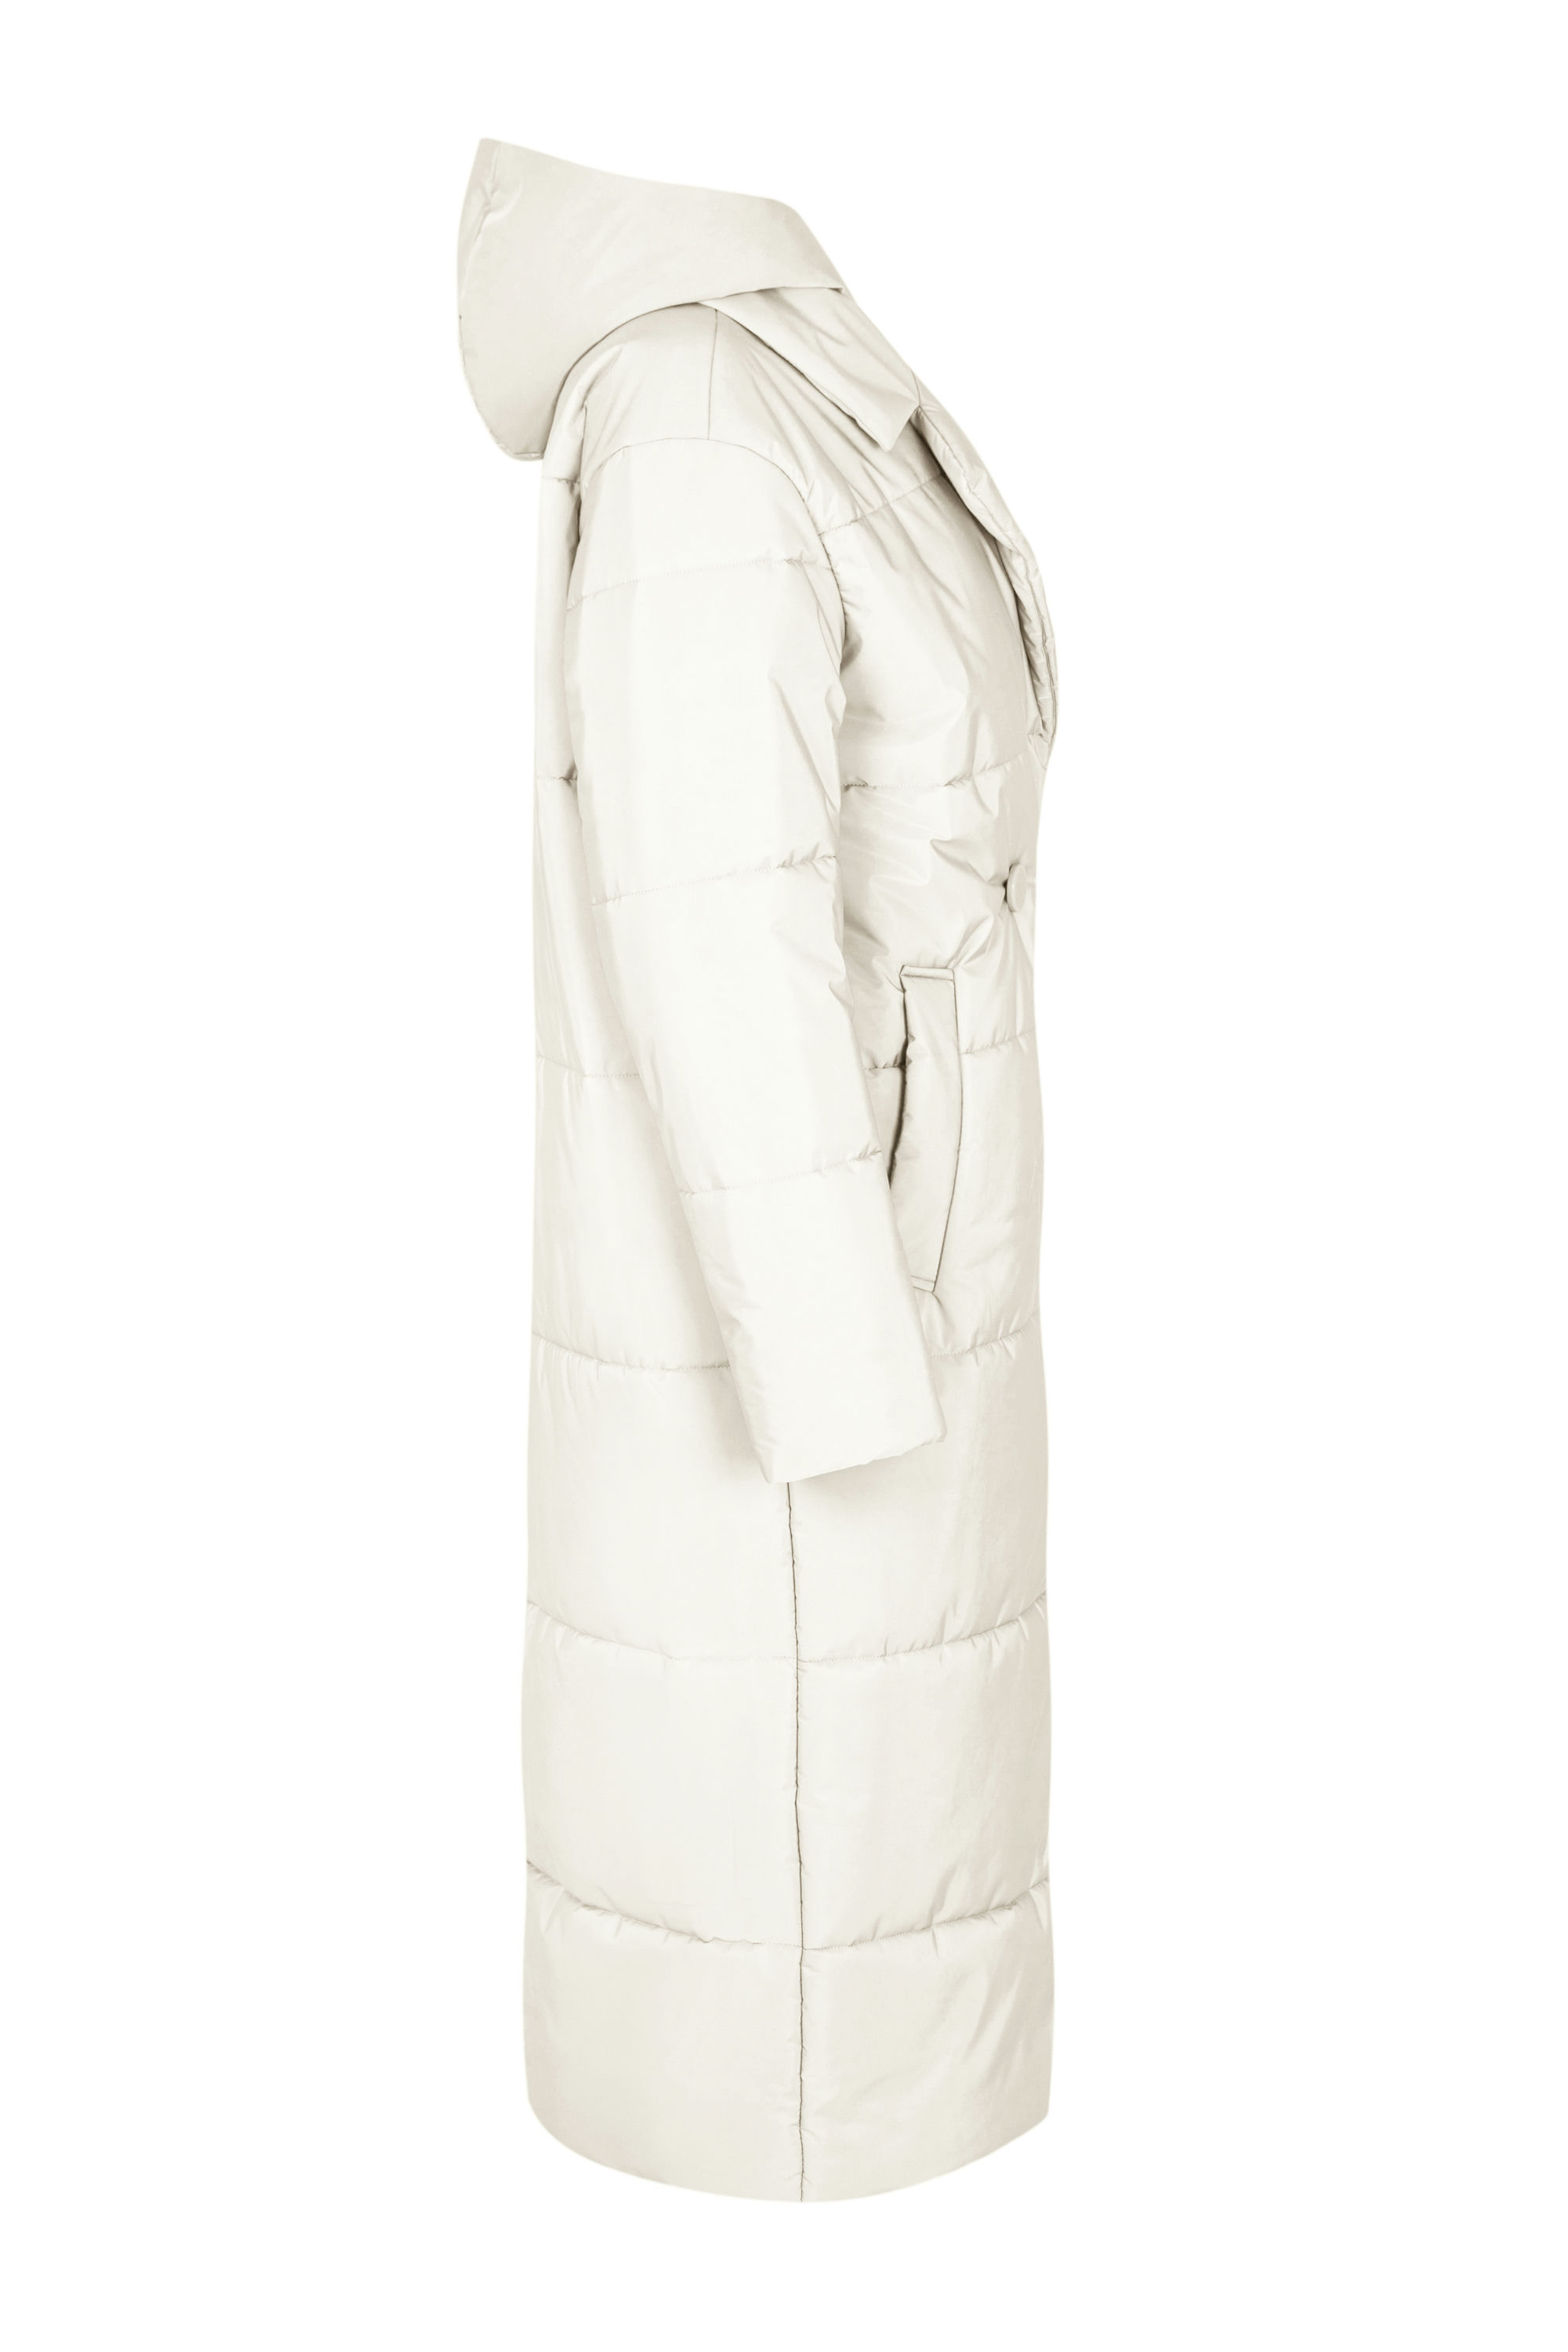 Пальто женское плащевое утепленное 5-12374-1. Фото 2.